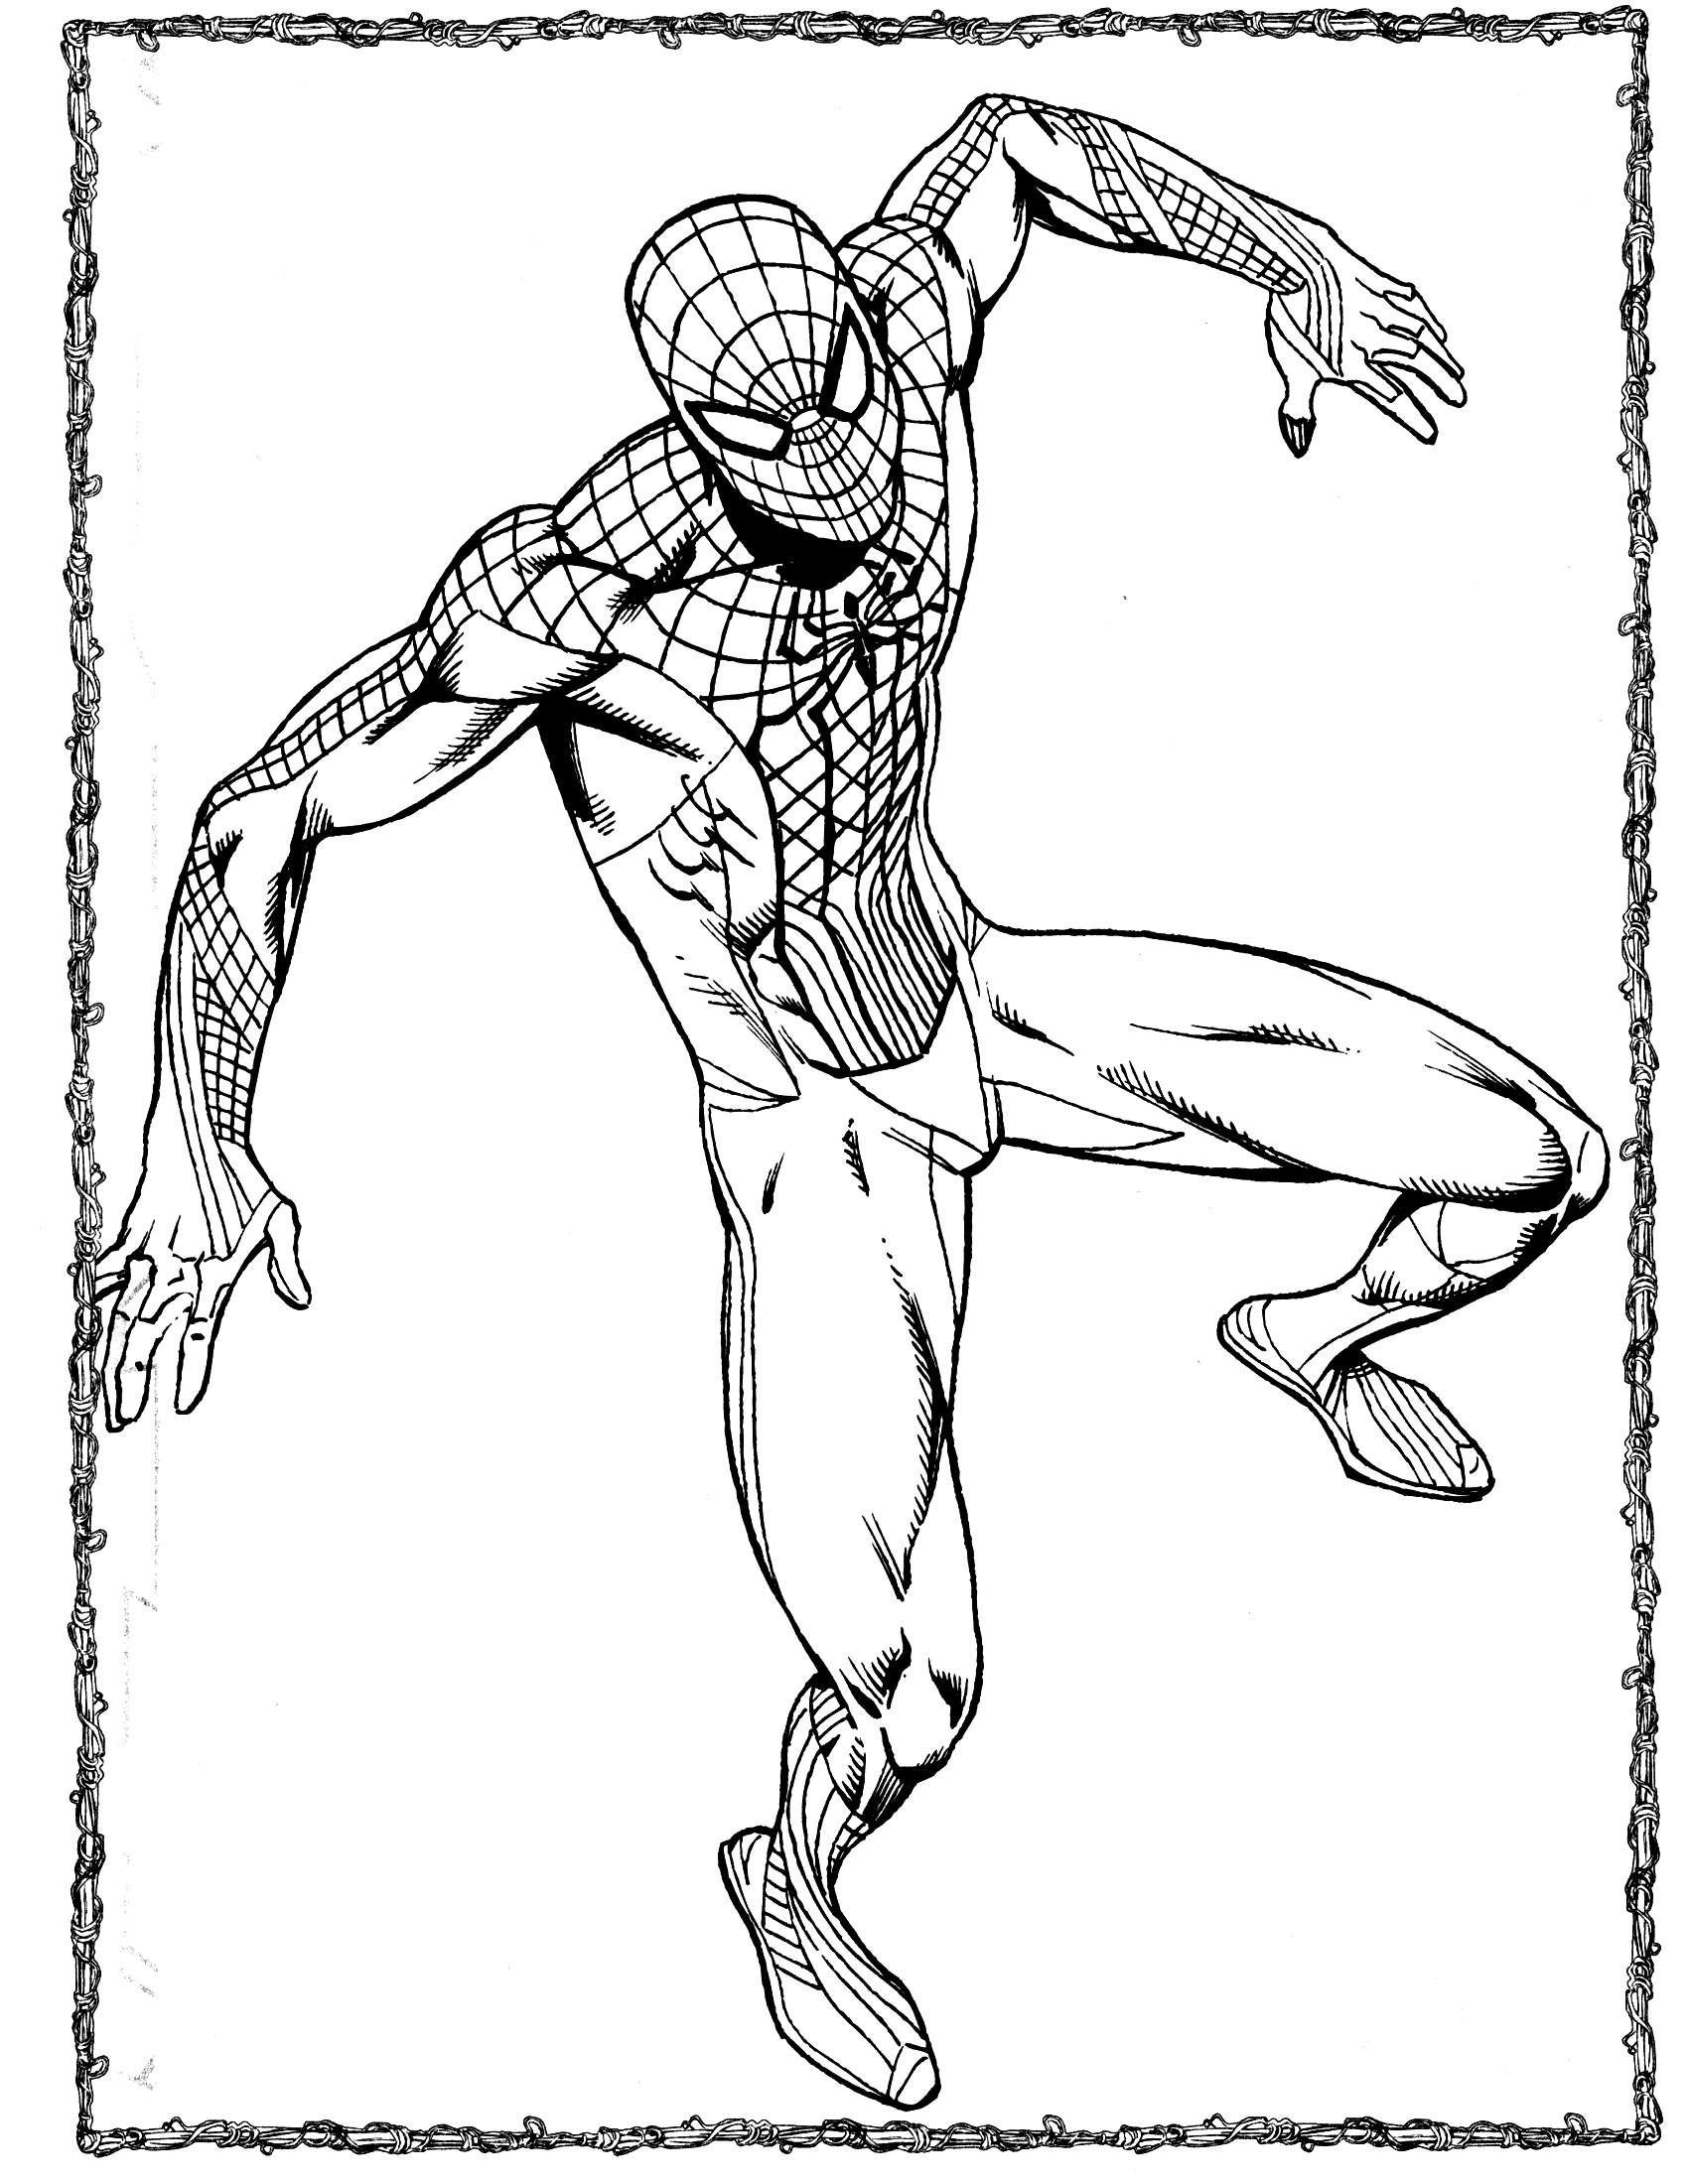 Kolorowanki Spider-Man do wydrukowania i pokolorowania 